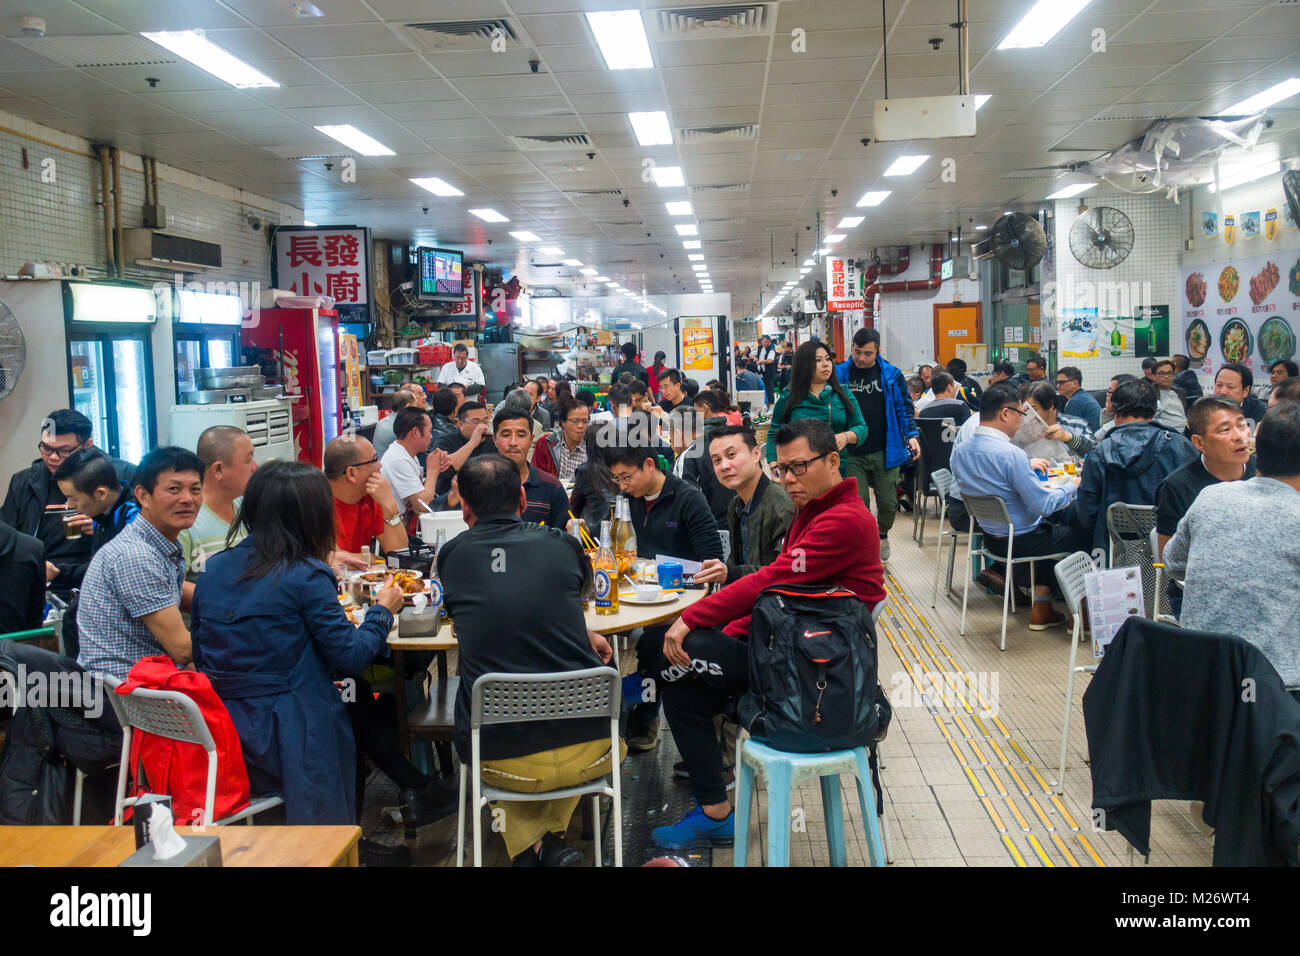 Hong Kong Restaurant traditionnel personnes manger manger manger Banque D'Images